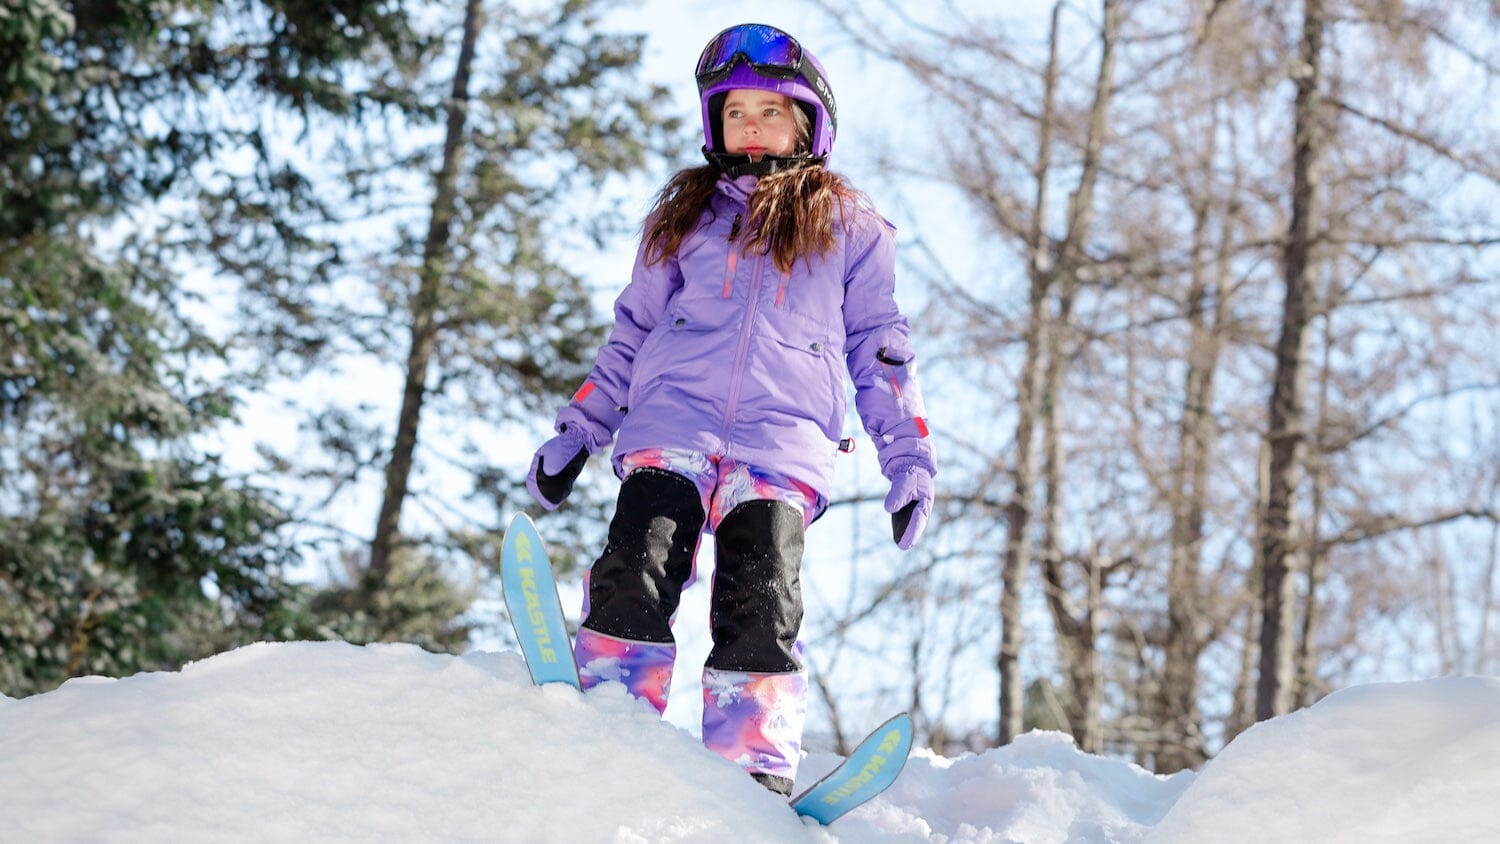 πώς να επιλέξετε ρούχα για παιδιά σκι